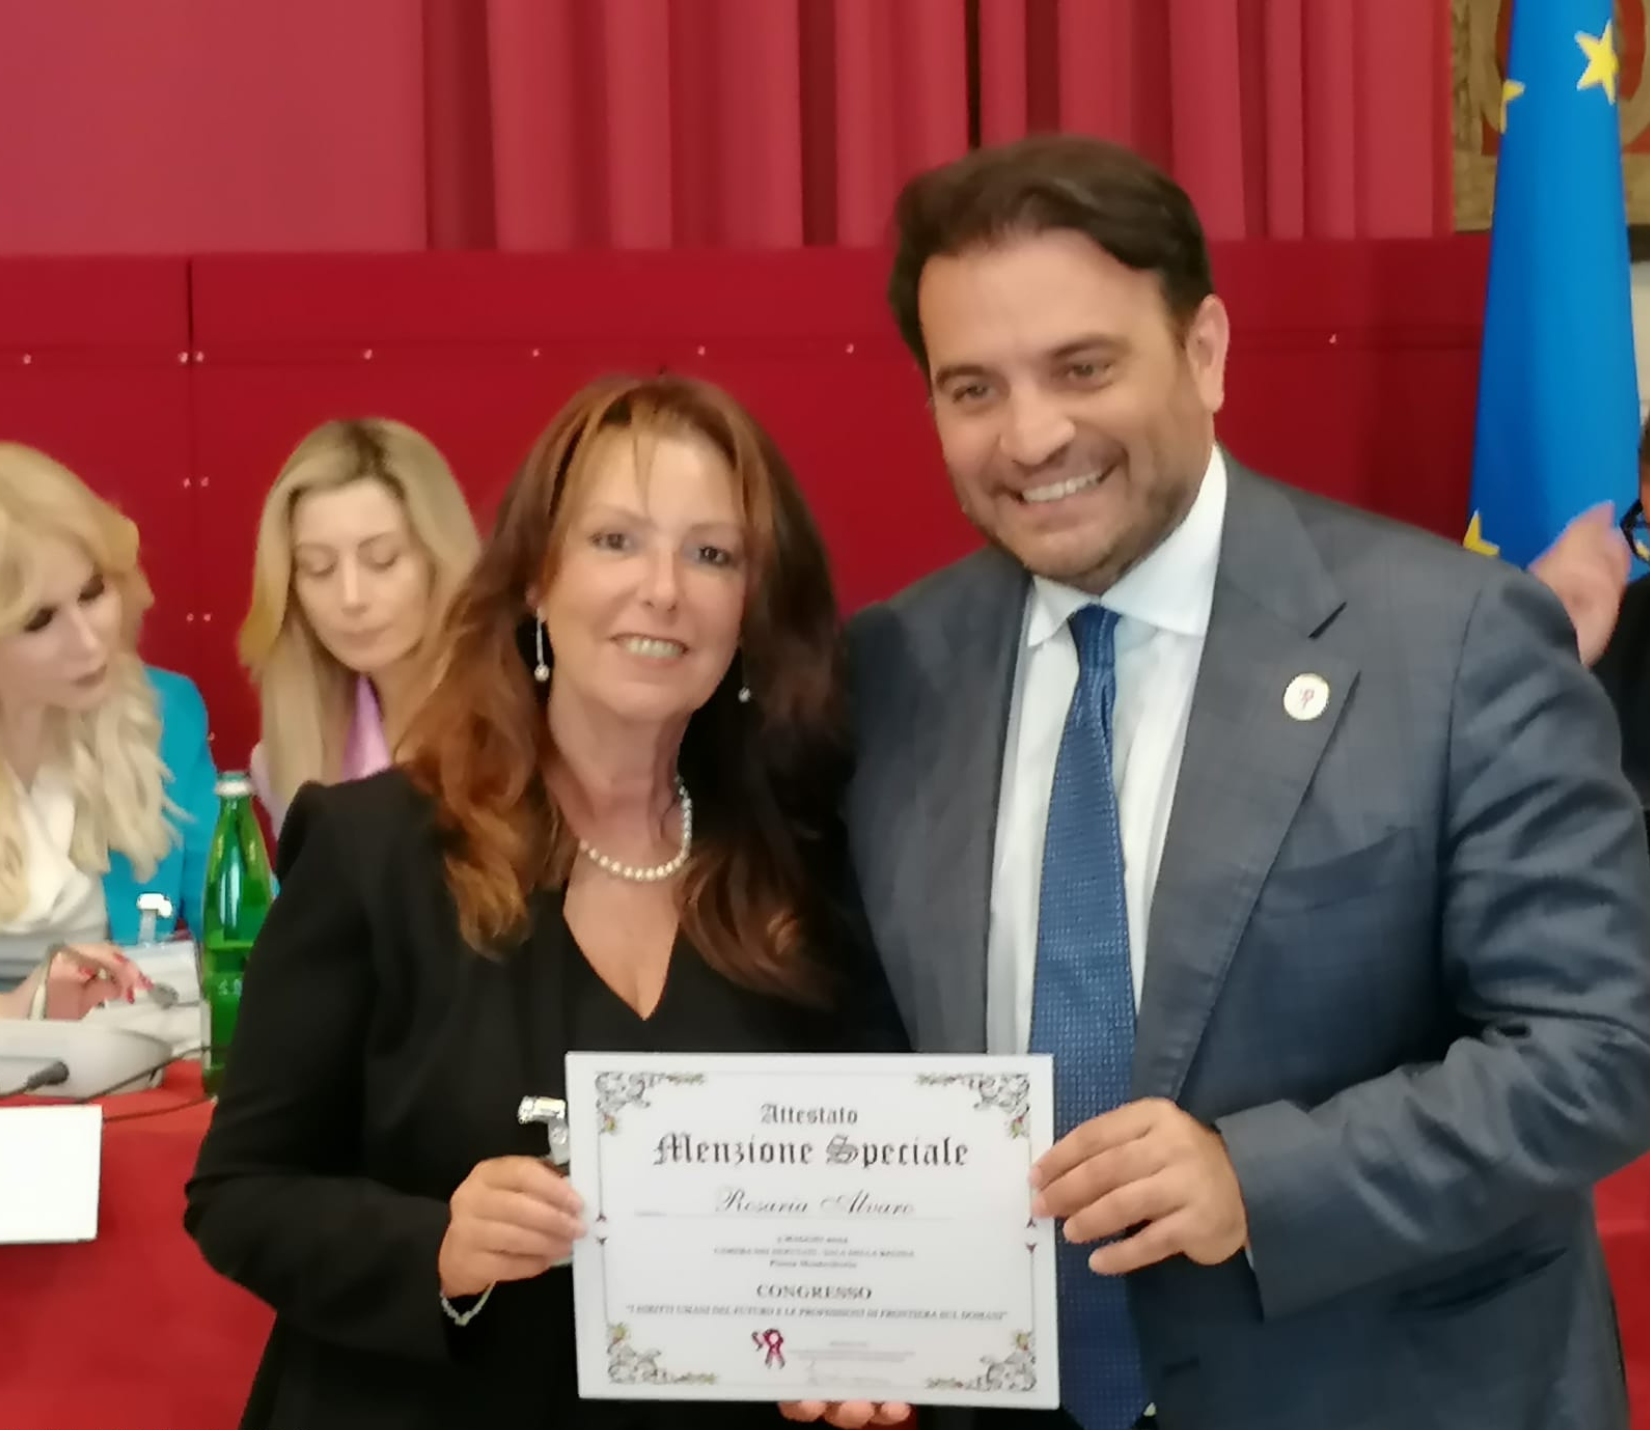 Rosaria Alvaro premiata per l’innovazione sociale: unione tra università e territorio per un futuro inclusivo e sostenibile